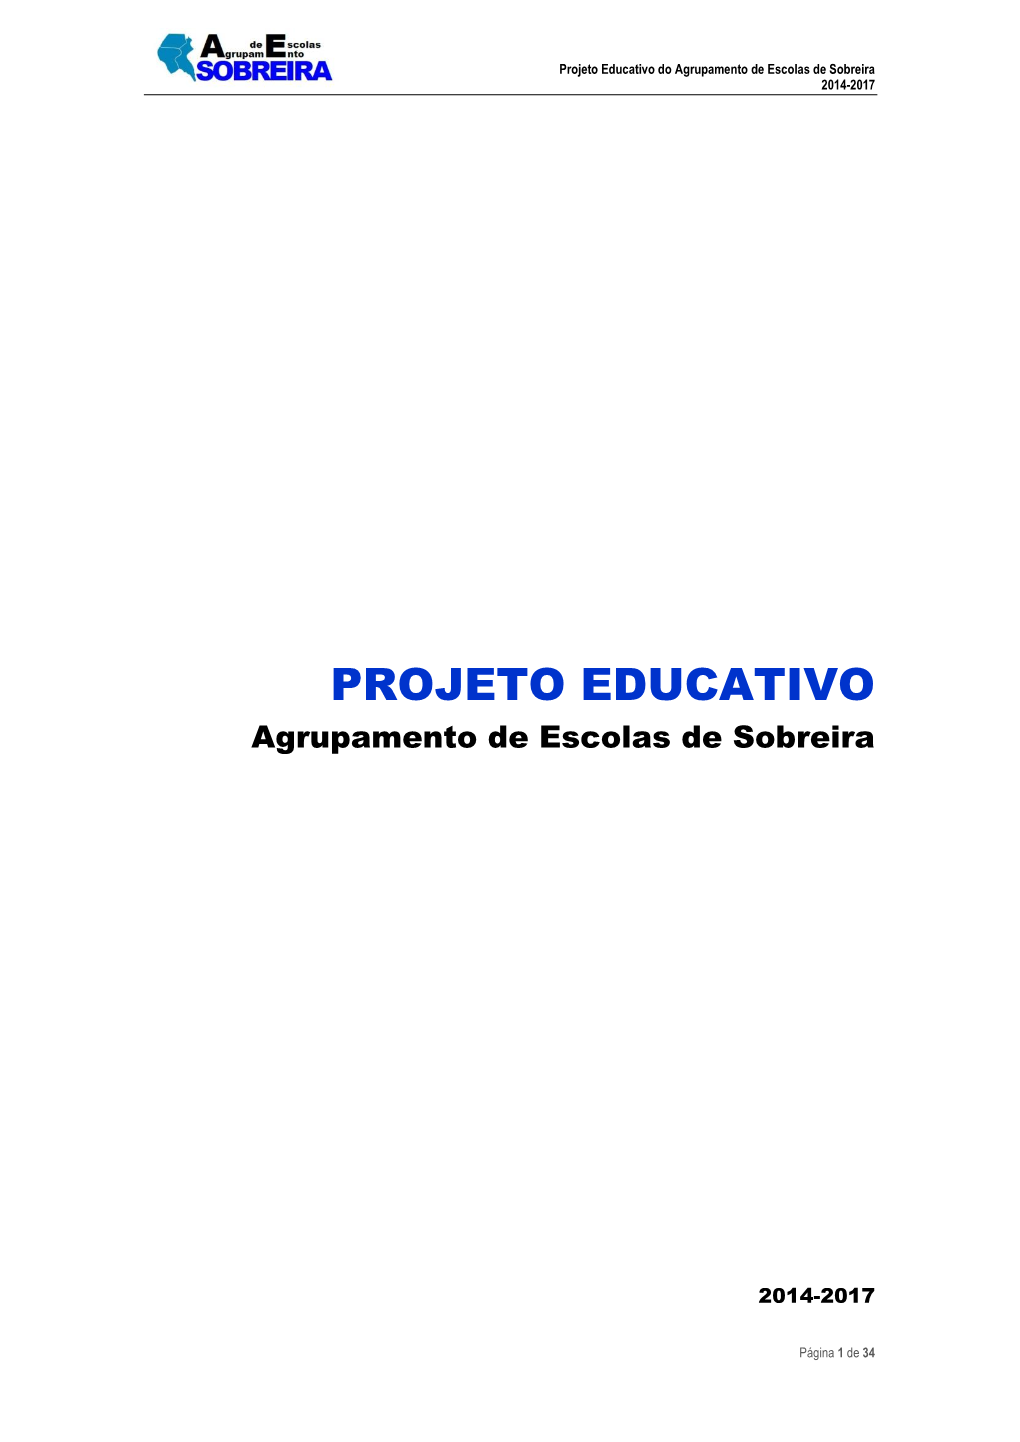 Projeto Educativo Do Agrupamento De Escolas De Sobreira 2014-2017